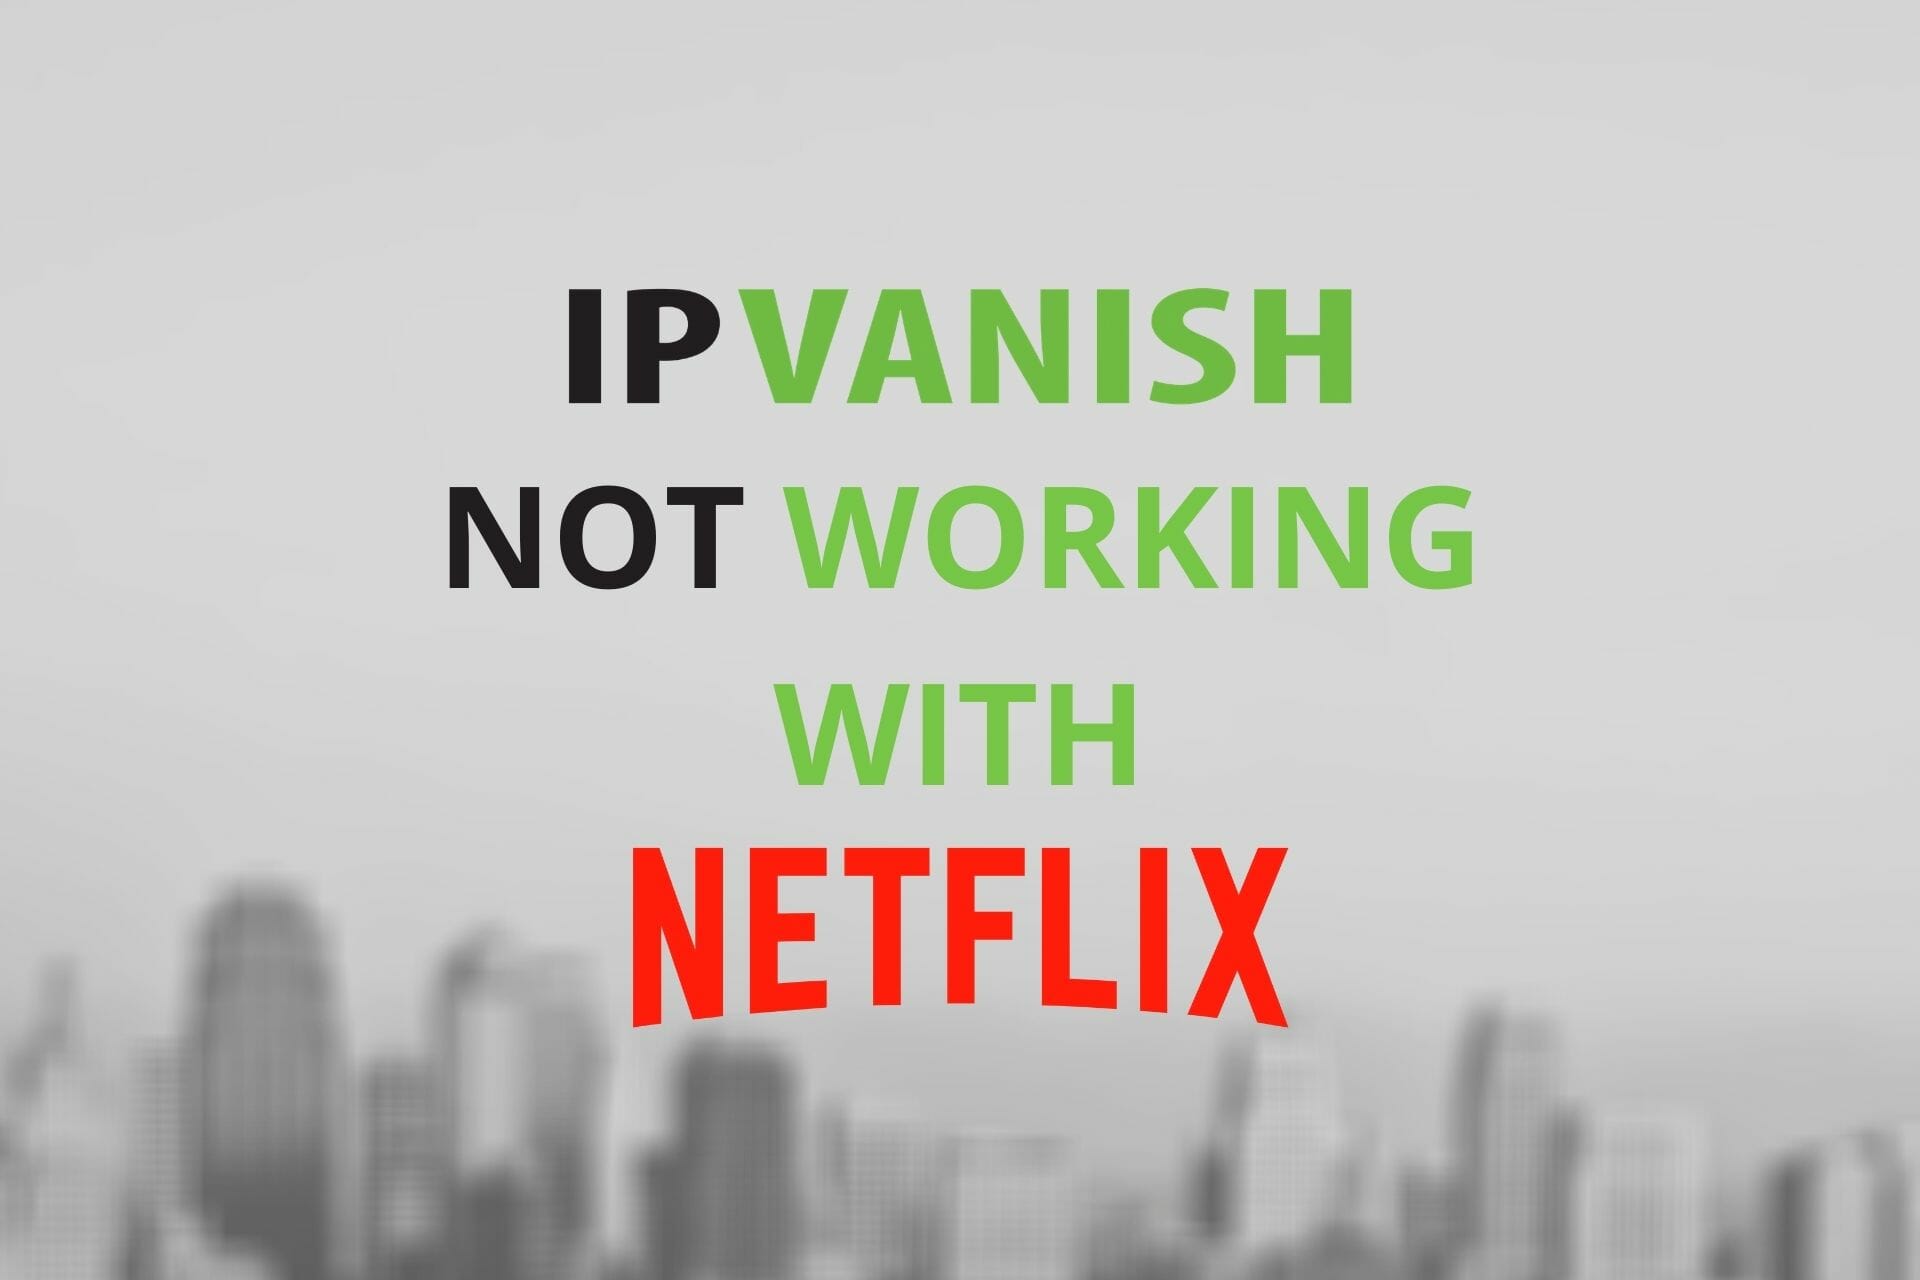 IPVANISH not working with Netflix